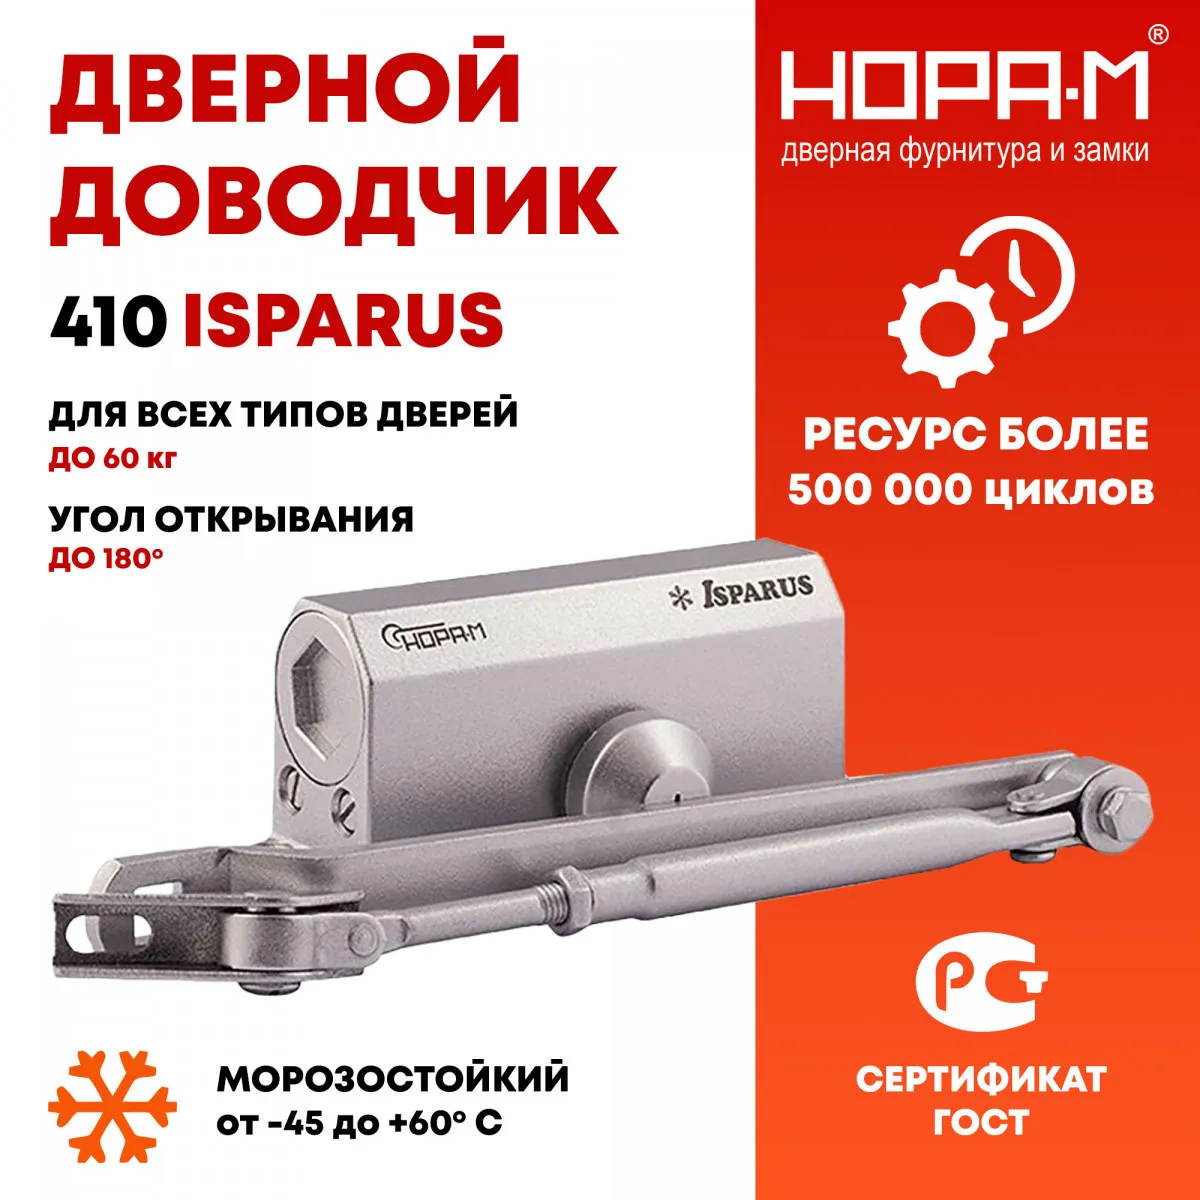 Rossiyaning NORA M kompaniyasidan 15 dan 60 kg gacha bo'lgan eshikni yopishtiruvchi 410 ISPARUS#1